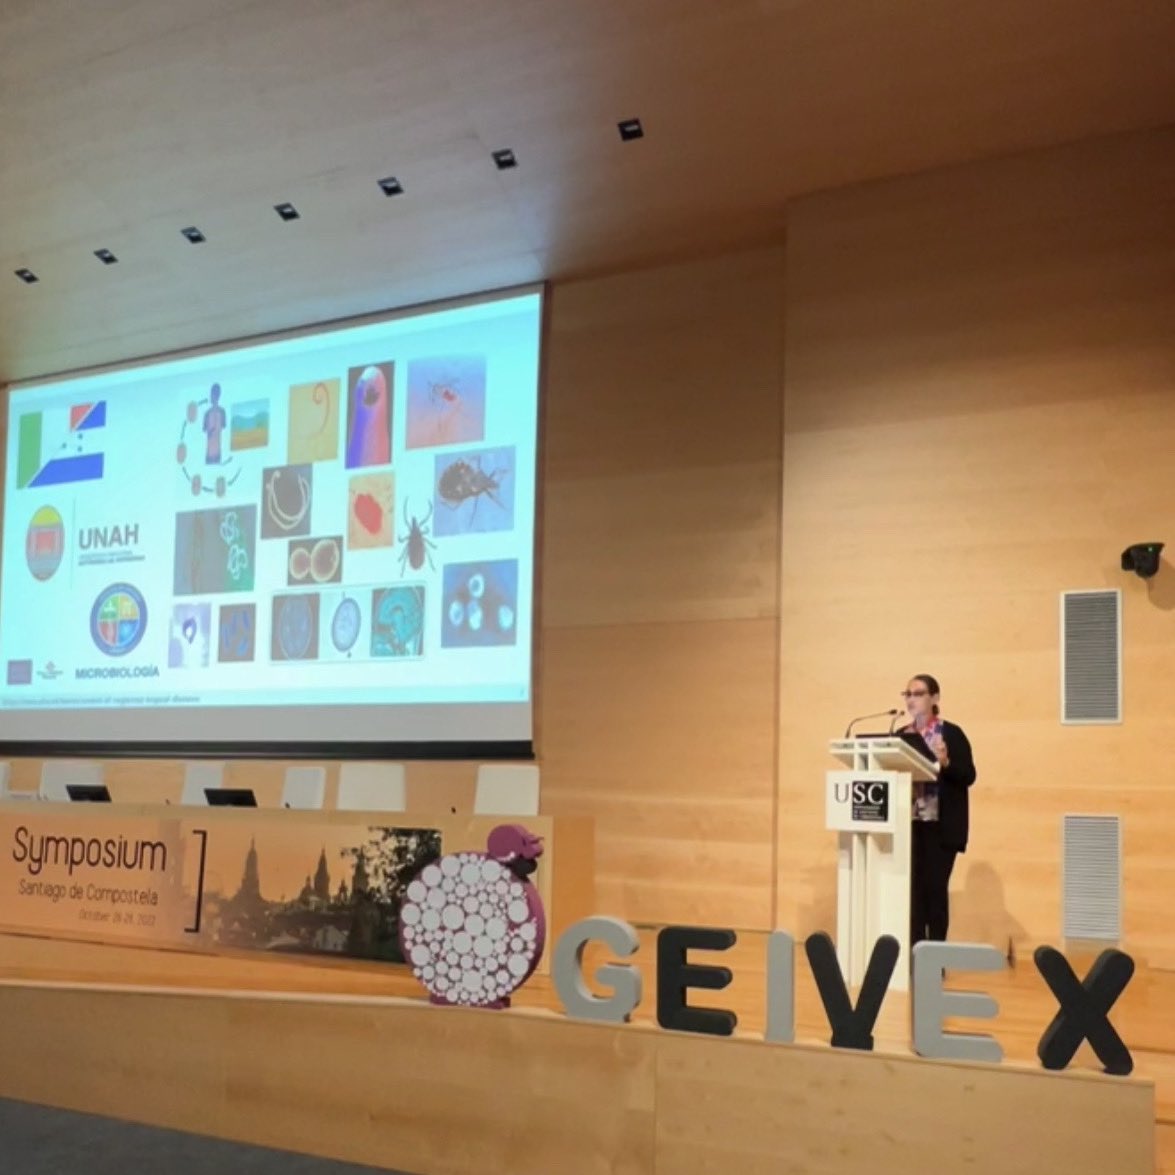 La #vacunóloga María Elena Bottazzi, nominada a 🏆premio Nobel de La Paz, inaugura el congreso #Geivex2022. 3️⃣ dias por delante con 🔬investigadores de primer nivel internacional en #santiagodecompostela